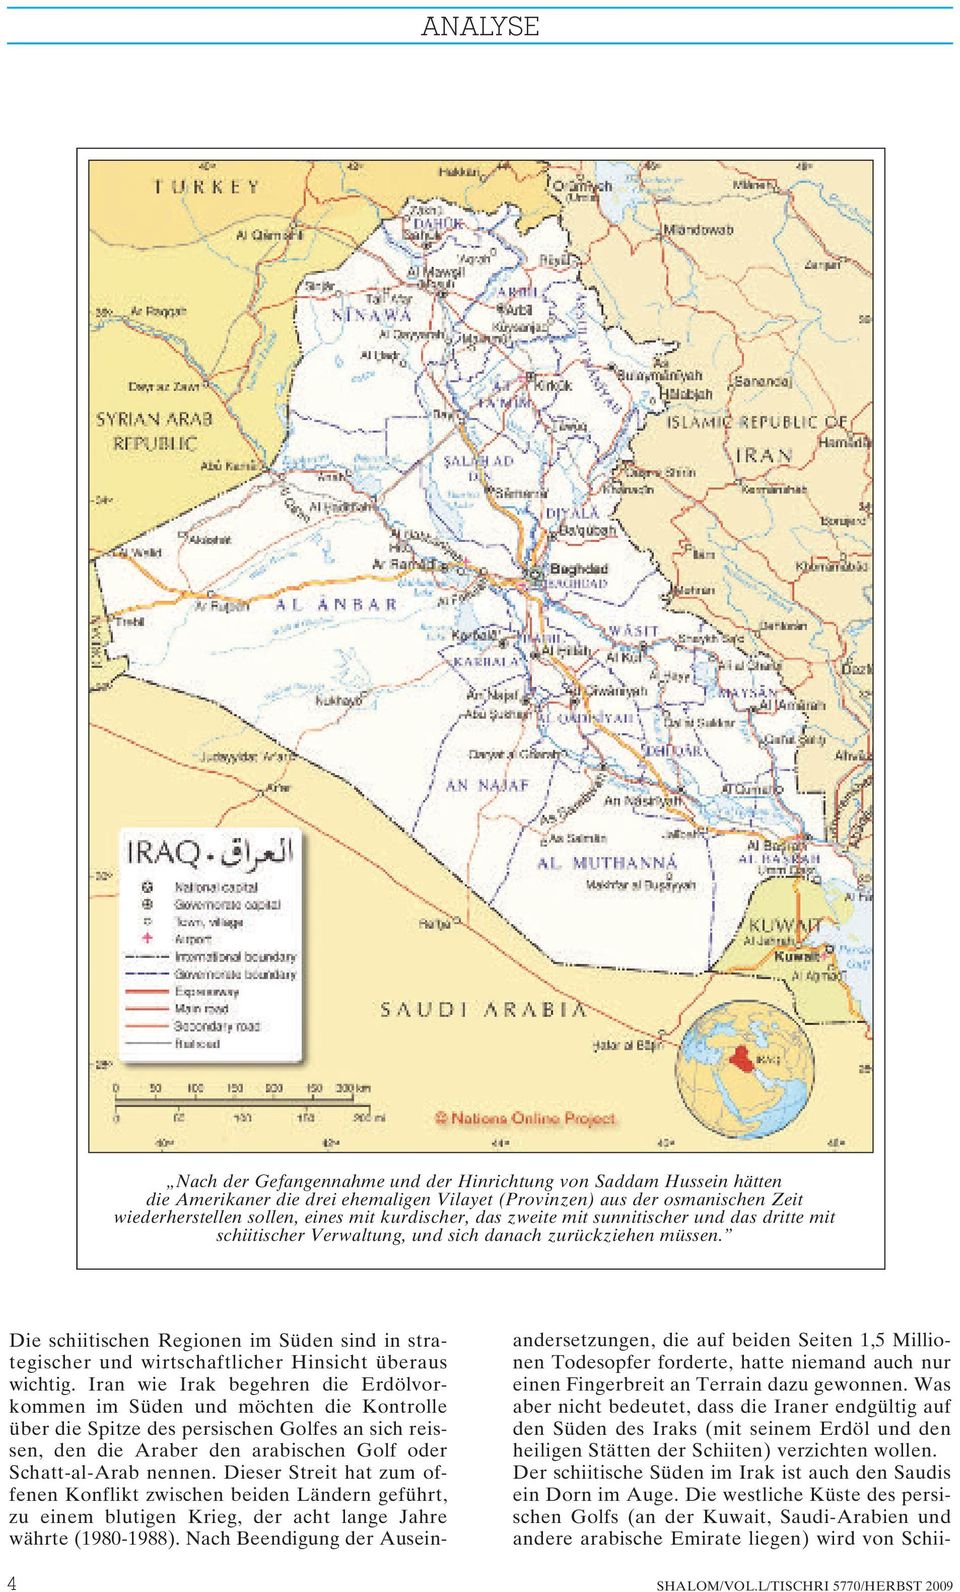 Die schiitischen Regionen im Süden sind in strategischer und wirtschaftlicher Hinsicht überaus wichtig.